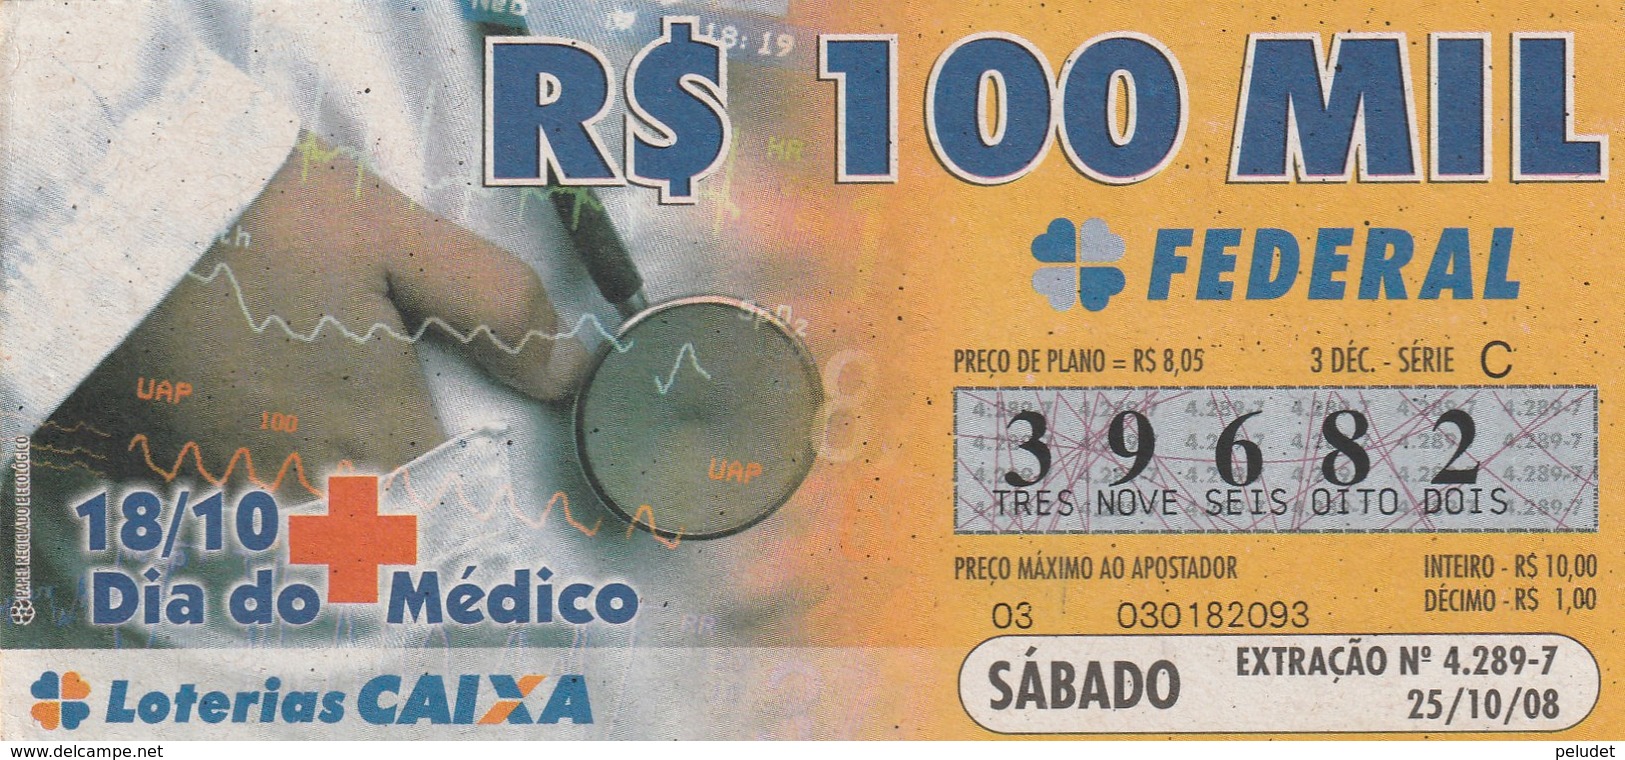 Brasil - 2008 - 18/10 DIA DO MEDICO - Billets De Loterie